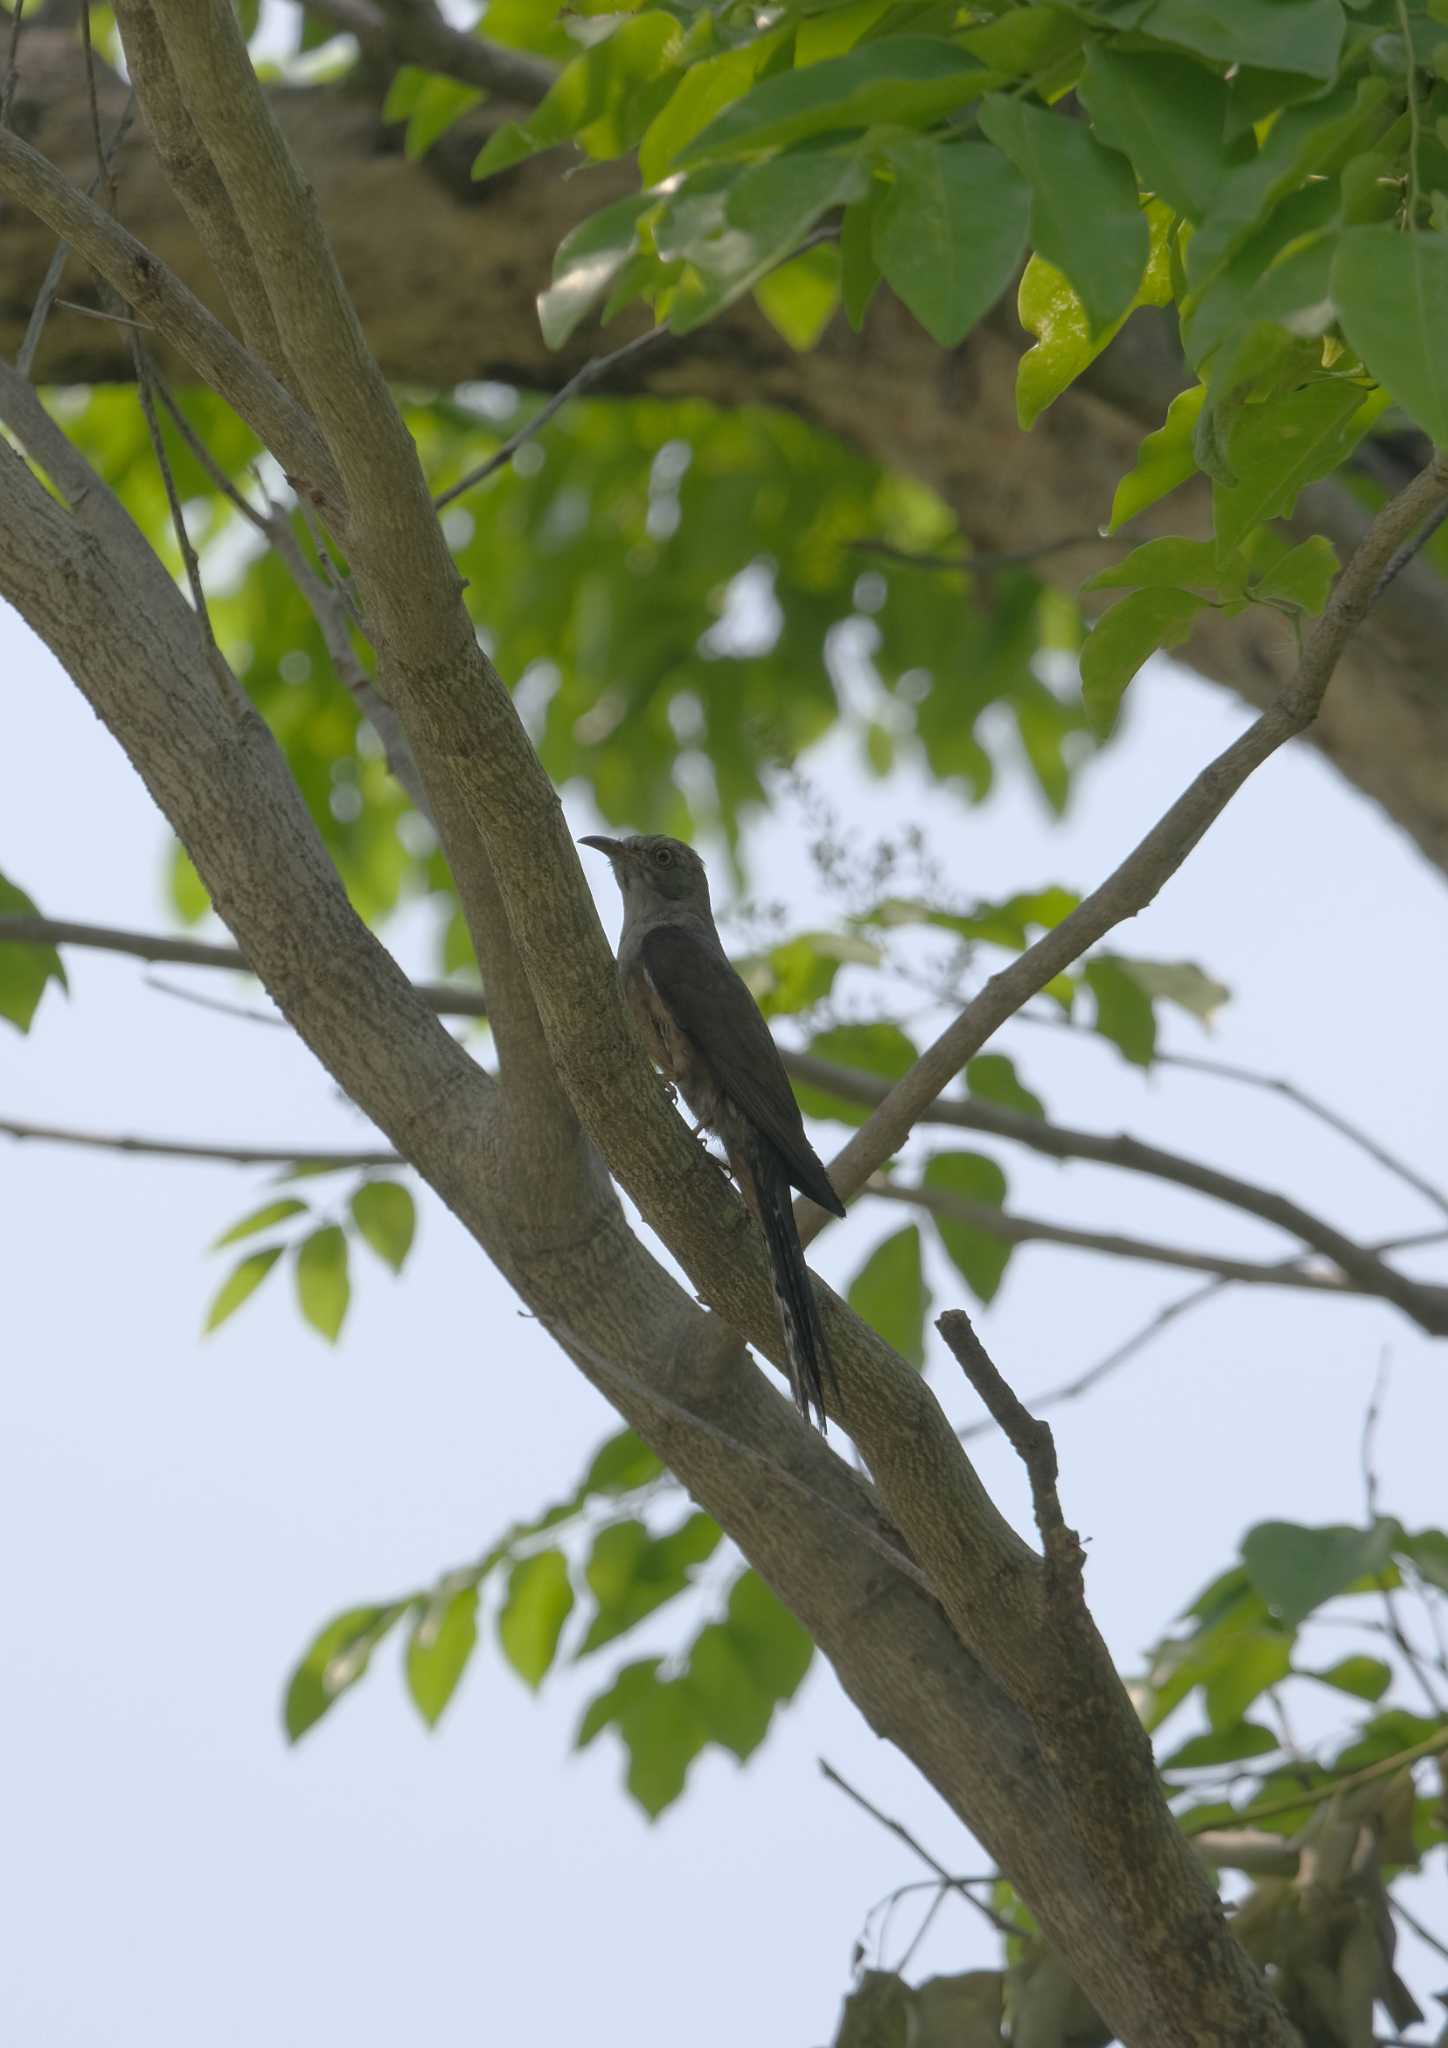 Photo of Plaintive Cuckoo at Wachirabenchathat Park(Suan Rot Fai) by BK MY